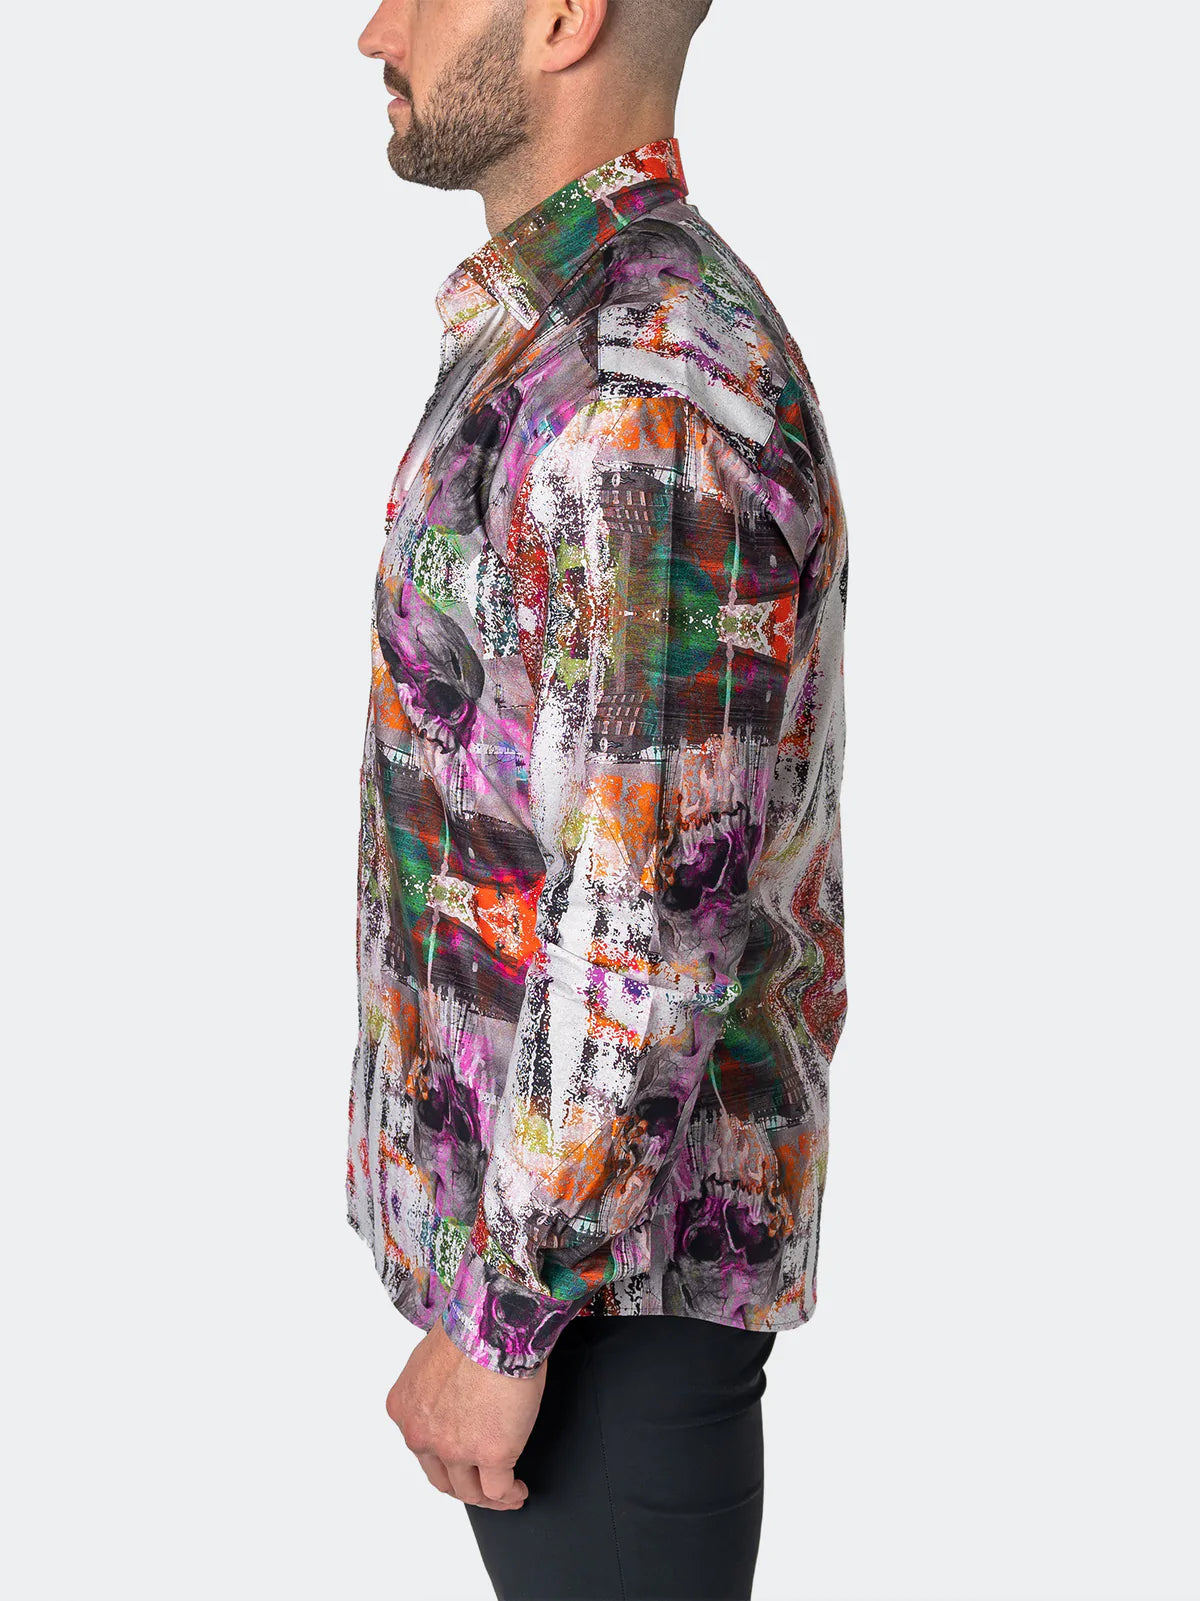 Maceoo Fibonacci Long Sleeve Dress Shirt Skull Scramble Print Multi